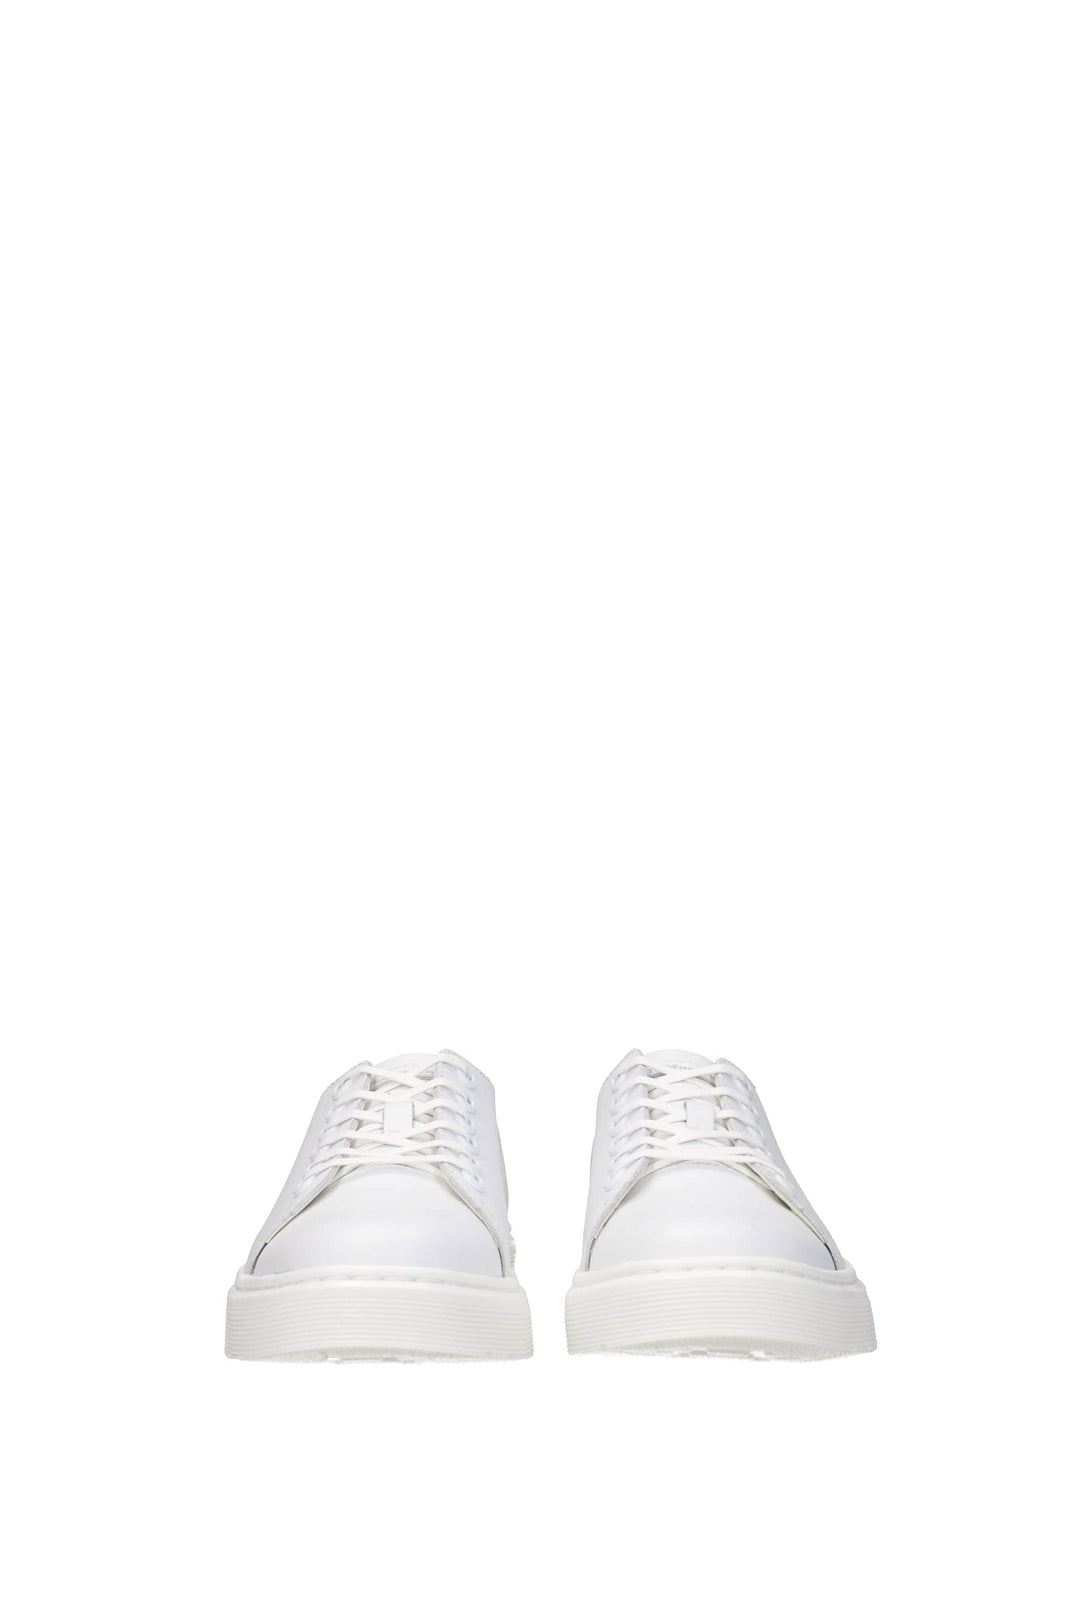 Sneakers Dante Pelle Bianco Bianco Ottico - Dr. Martens - Uomo